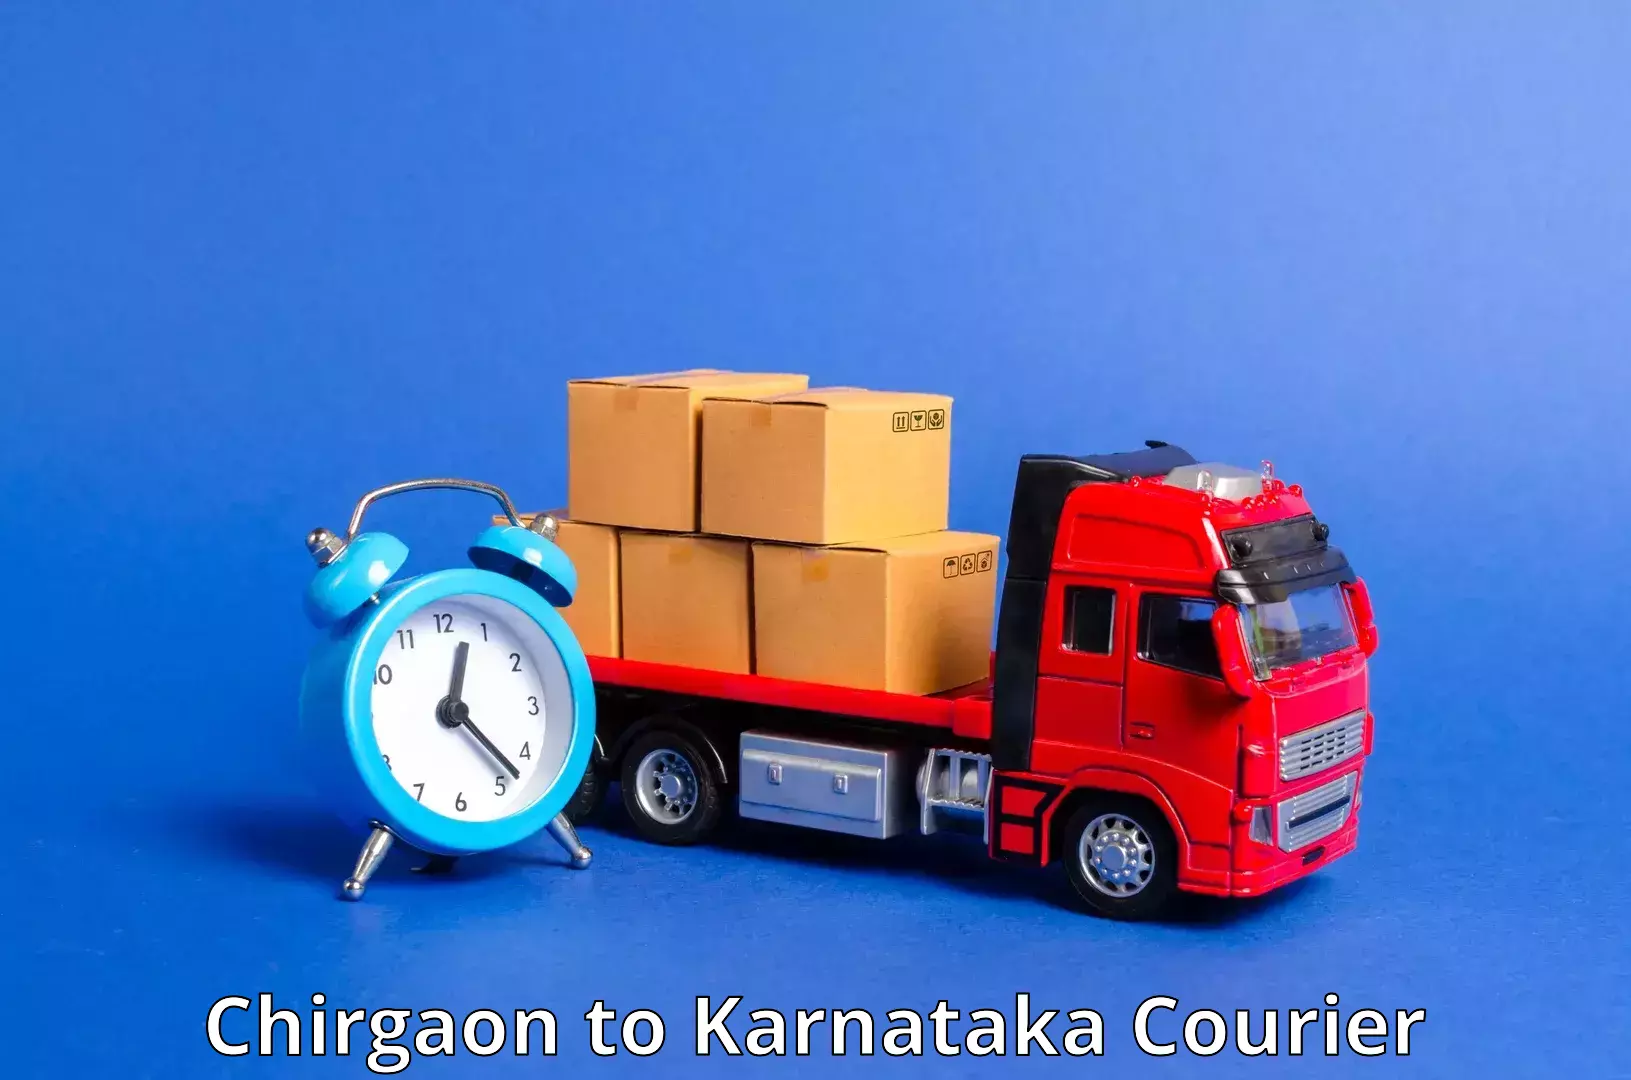 Overnight delivery services Chirgaon to Chikkanayakanahalli